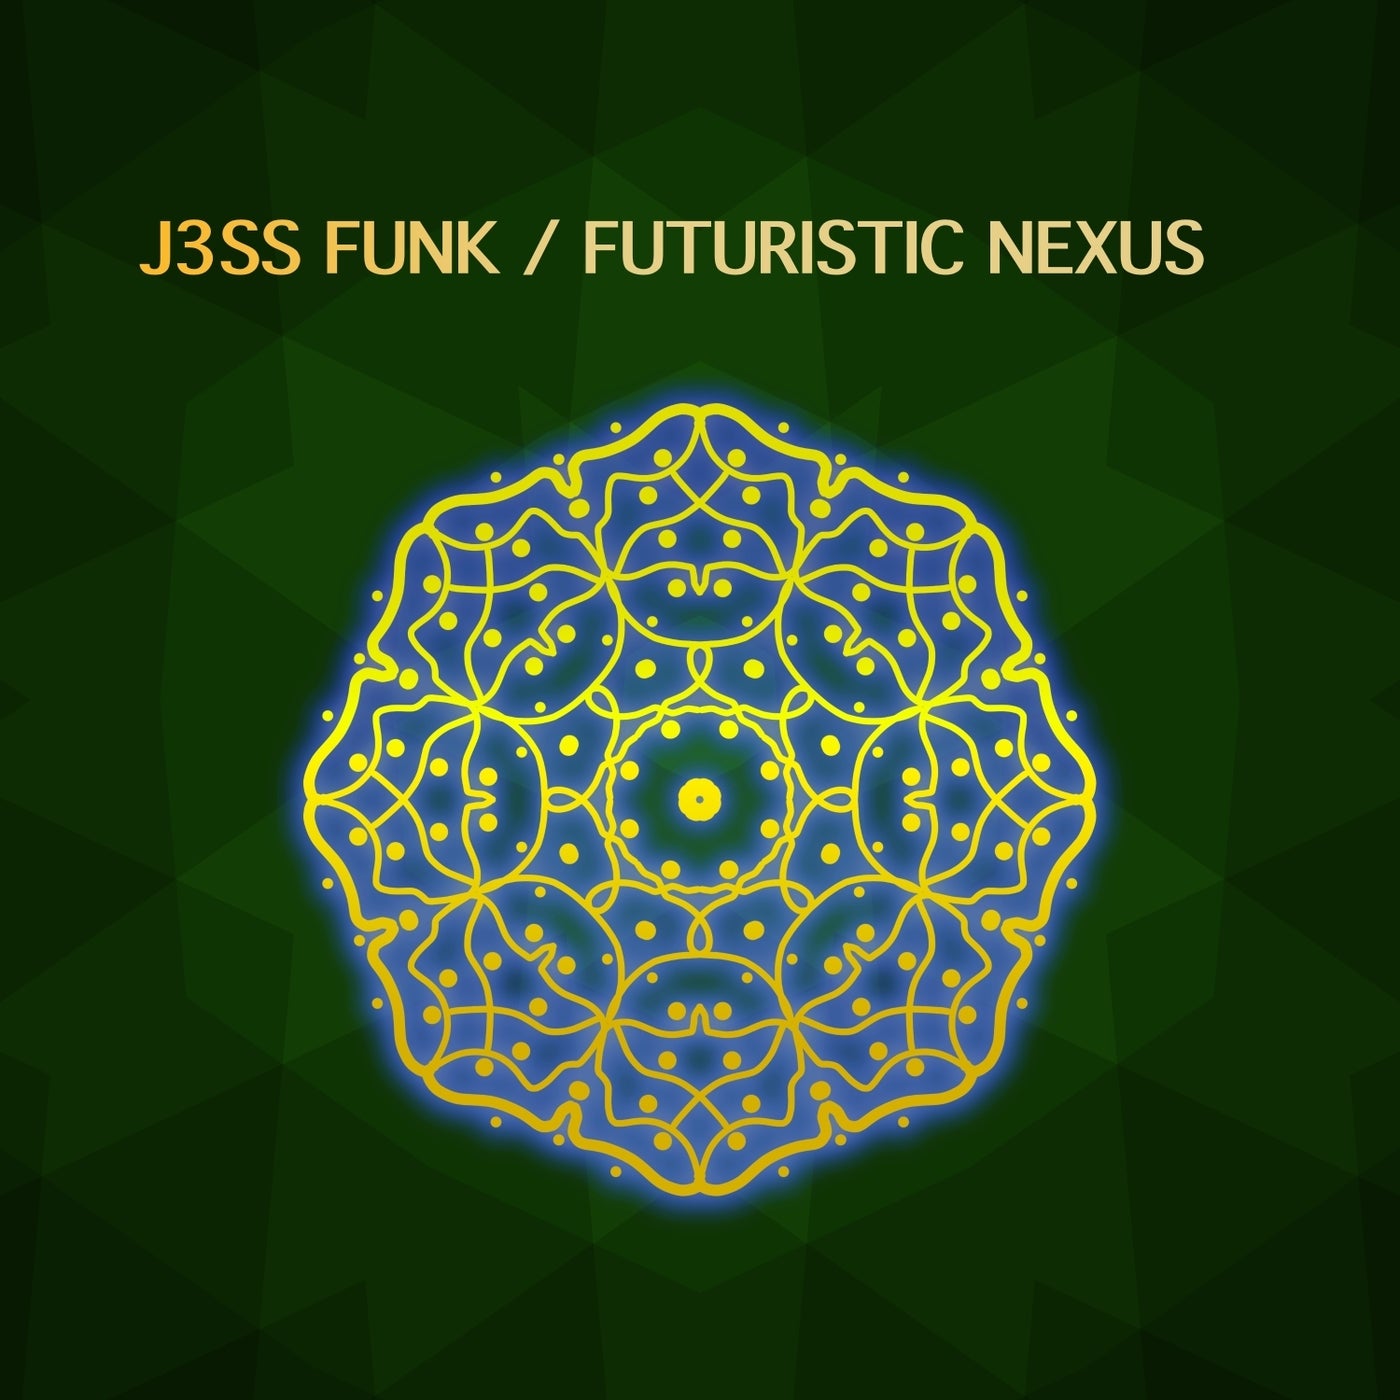 Futuristic Nexus